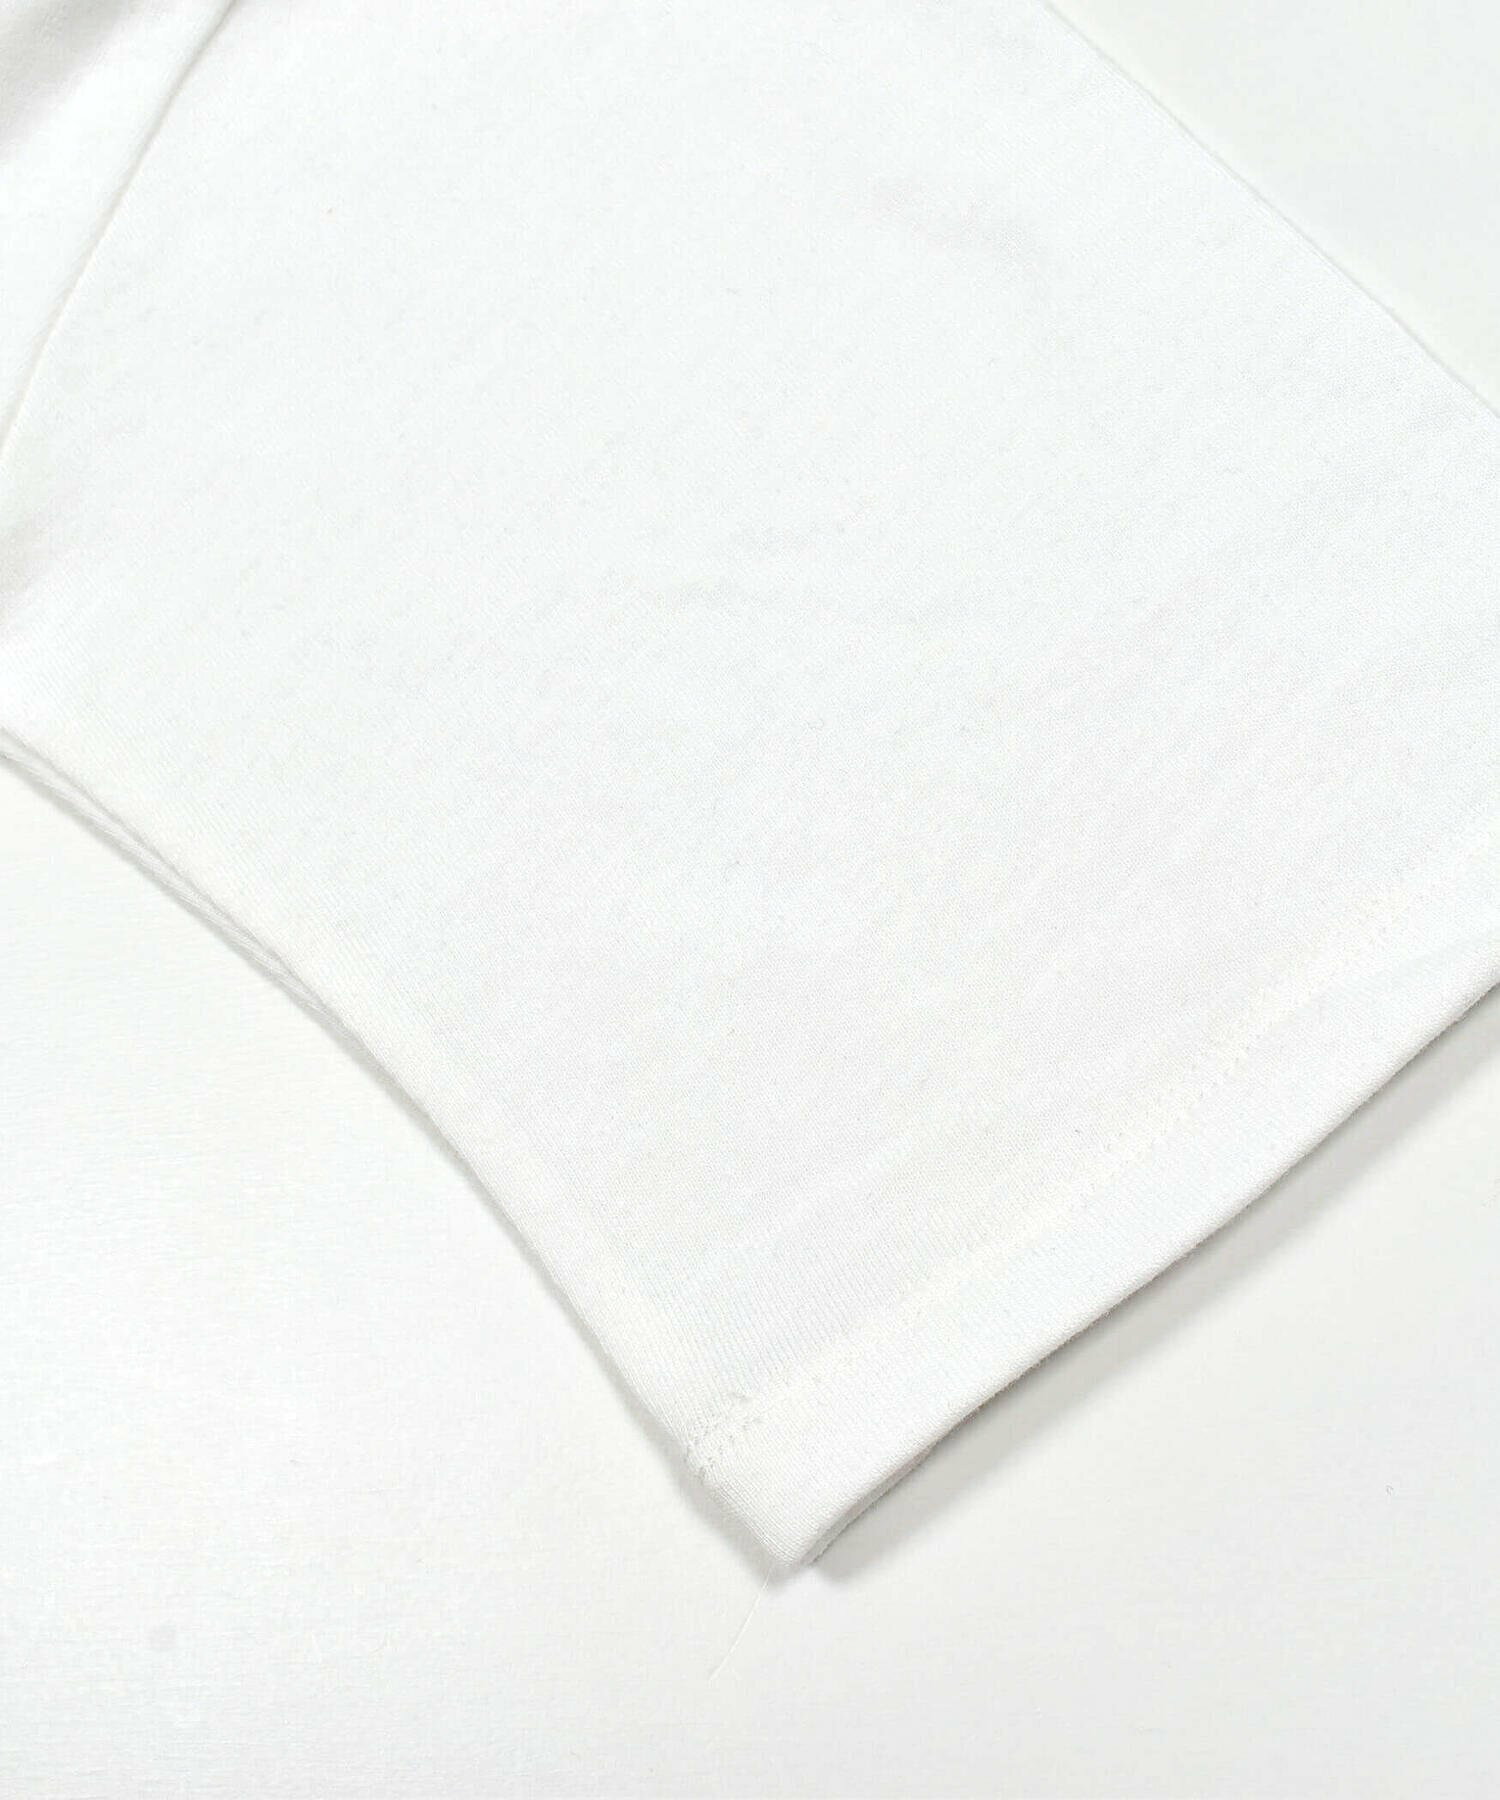 【 ニコ☆プチ 掲載 】ベルト付きキャミワンピース&Tシャツセット(130~160cm)